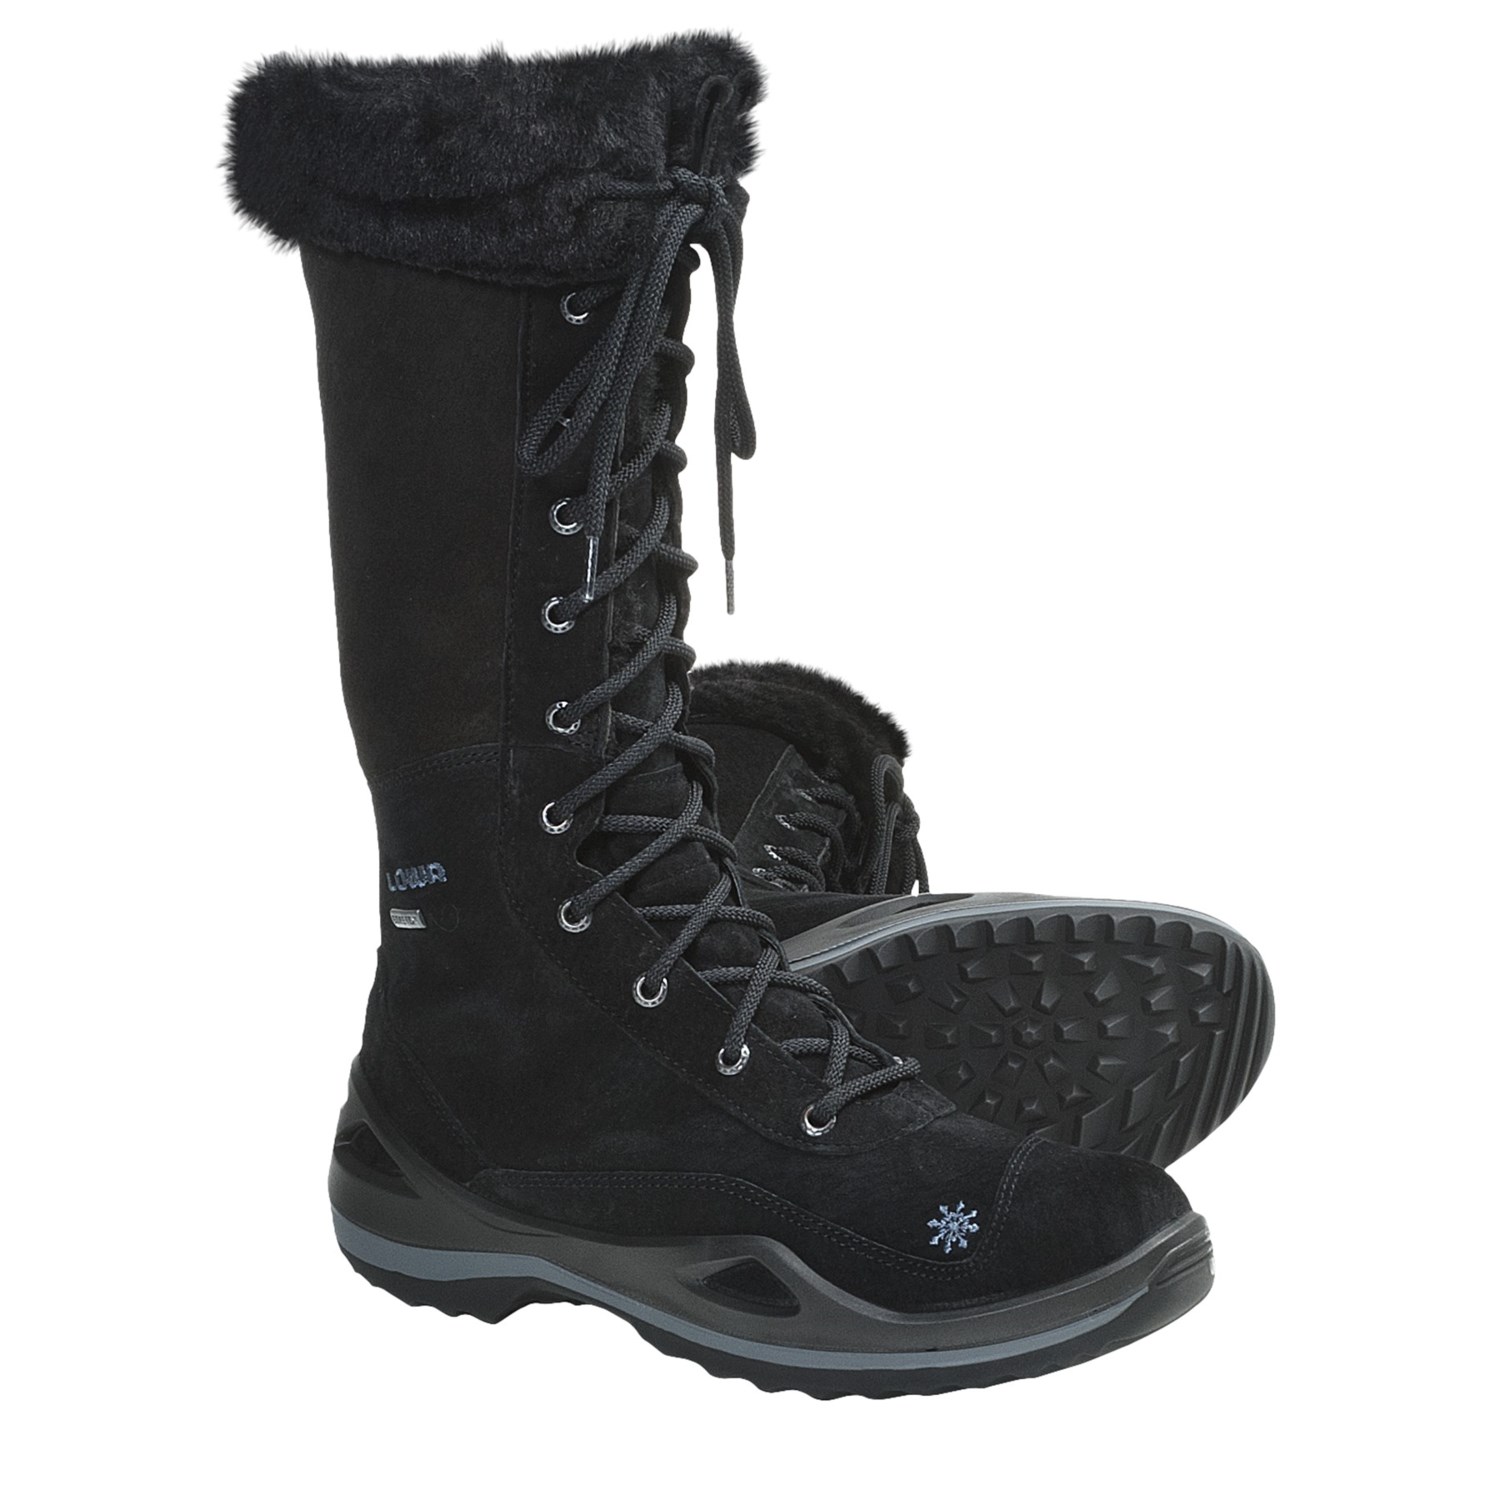 Women;s Waterproof Winter Boots Wide Width | Santa Barbara ...